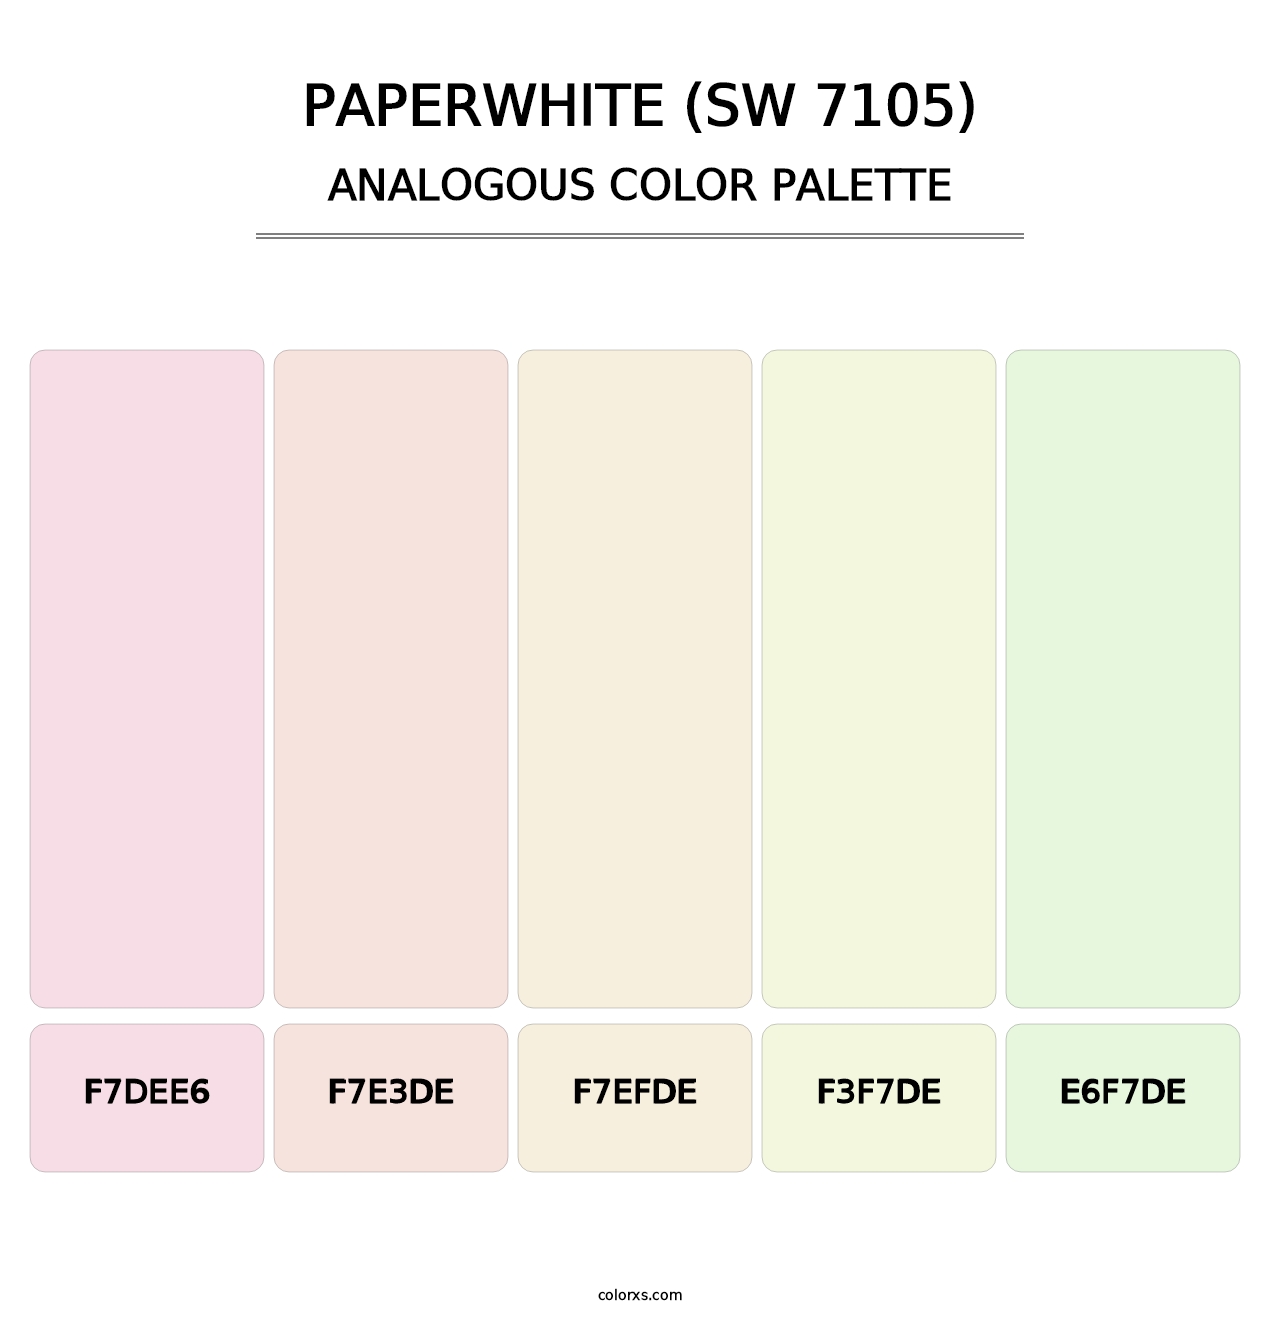 Paperwhite (SW 7105) - Analogous Color Palette